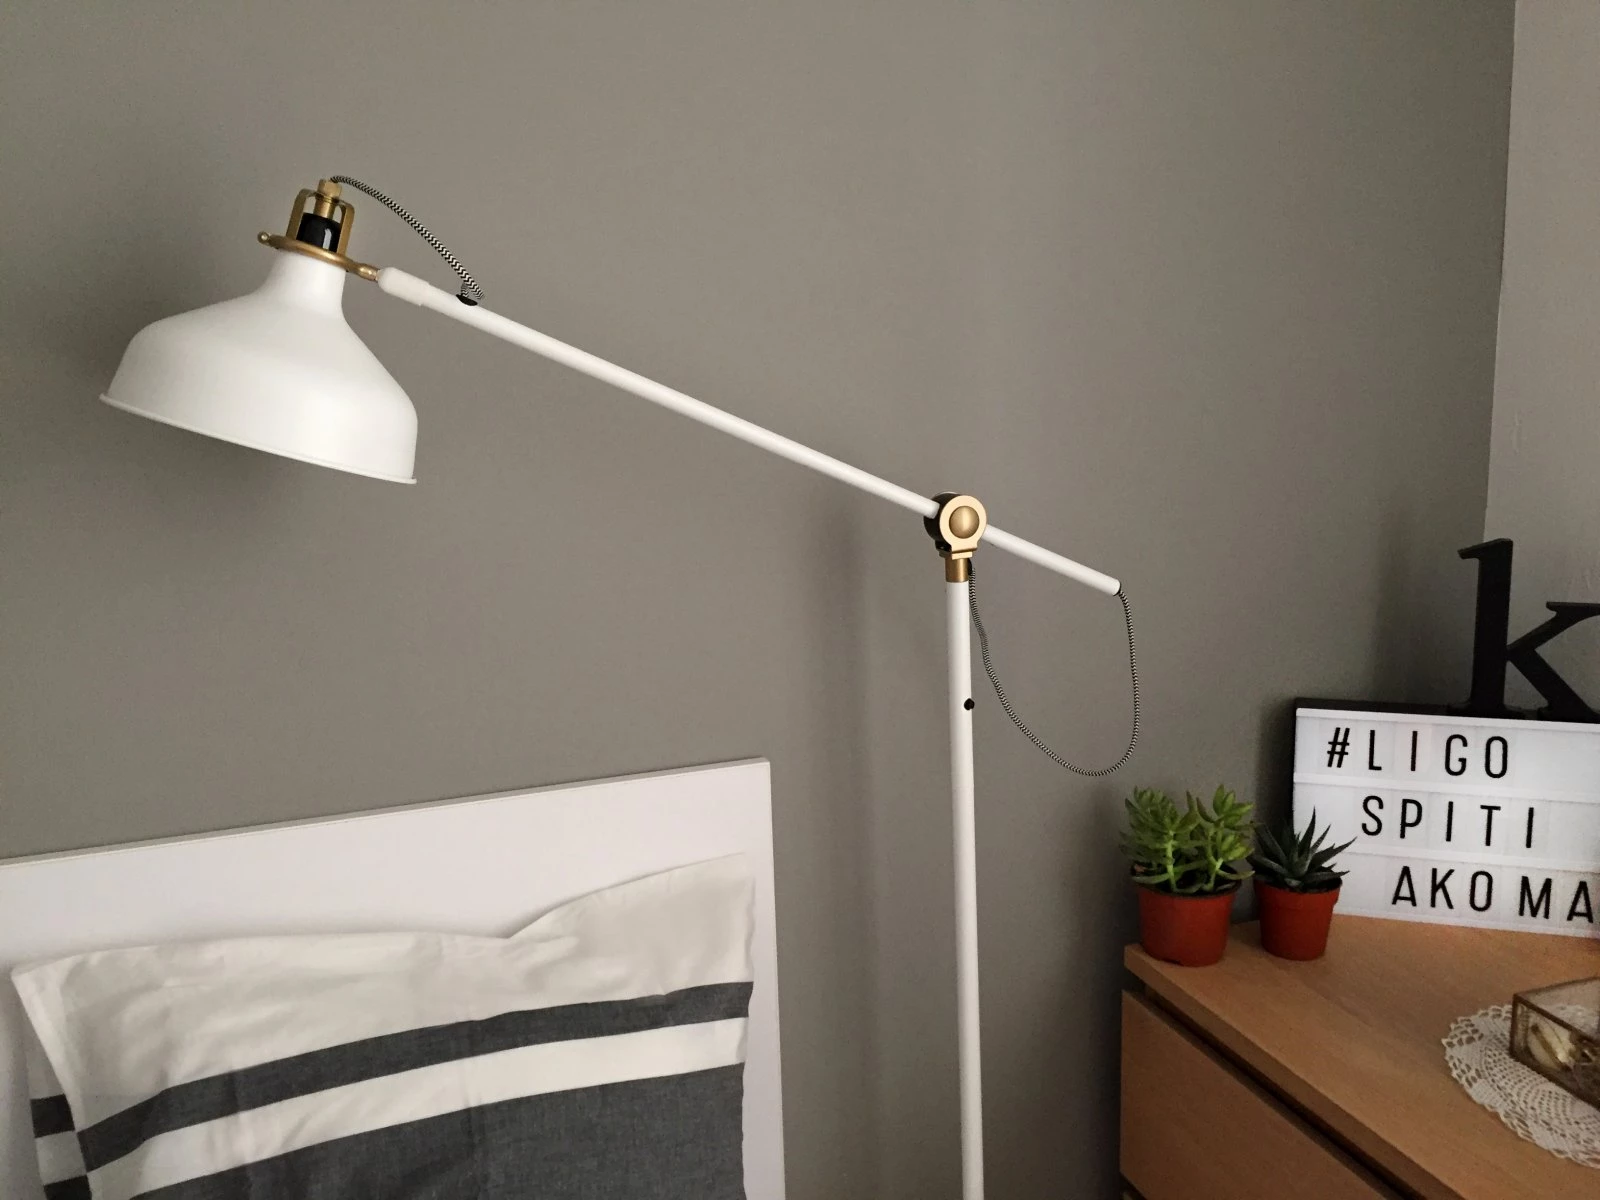 Όταν είσαι υπναρού και η IKEA σου δίνει λόγους για #ligospitiakoma πώς να ξεκολλήσεις από το κρεβάτι σου; - εικόνα 2